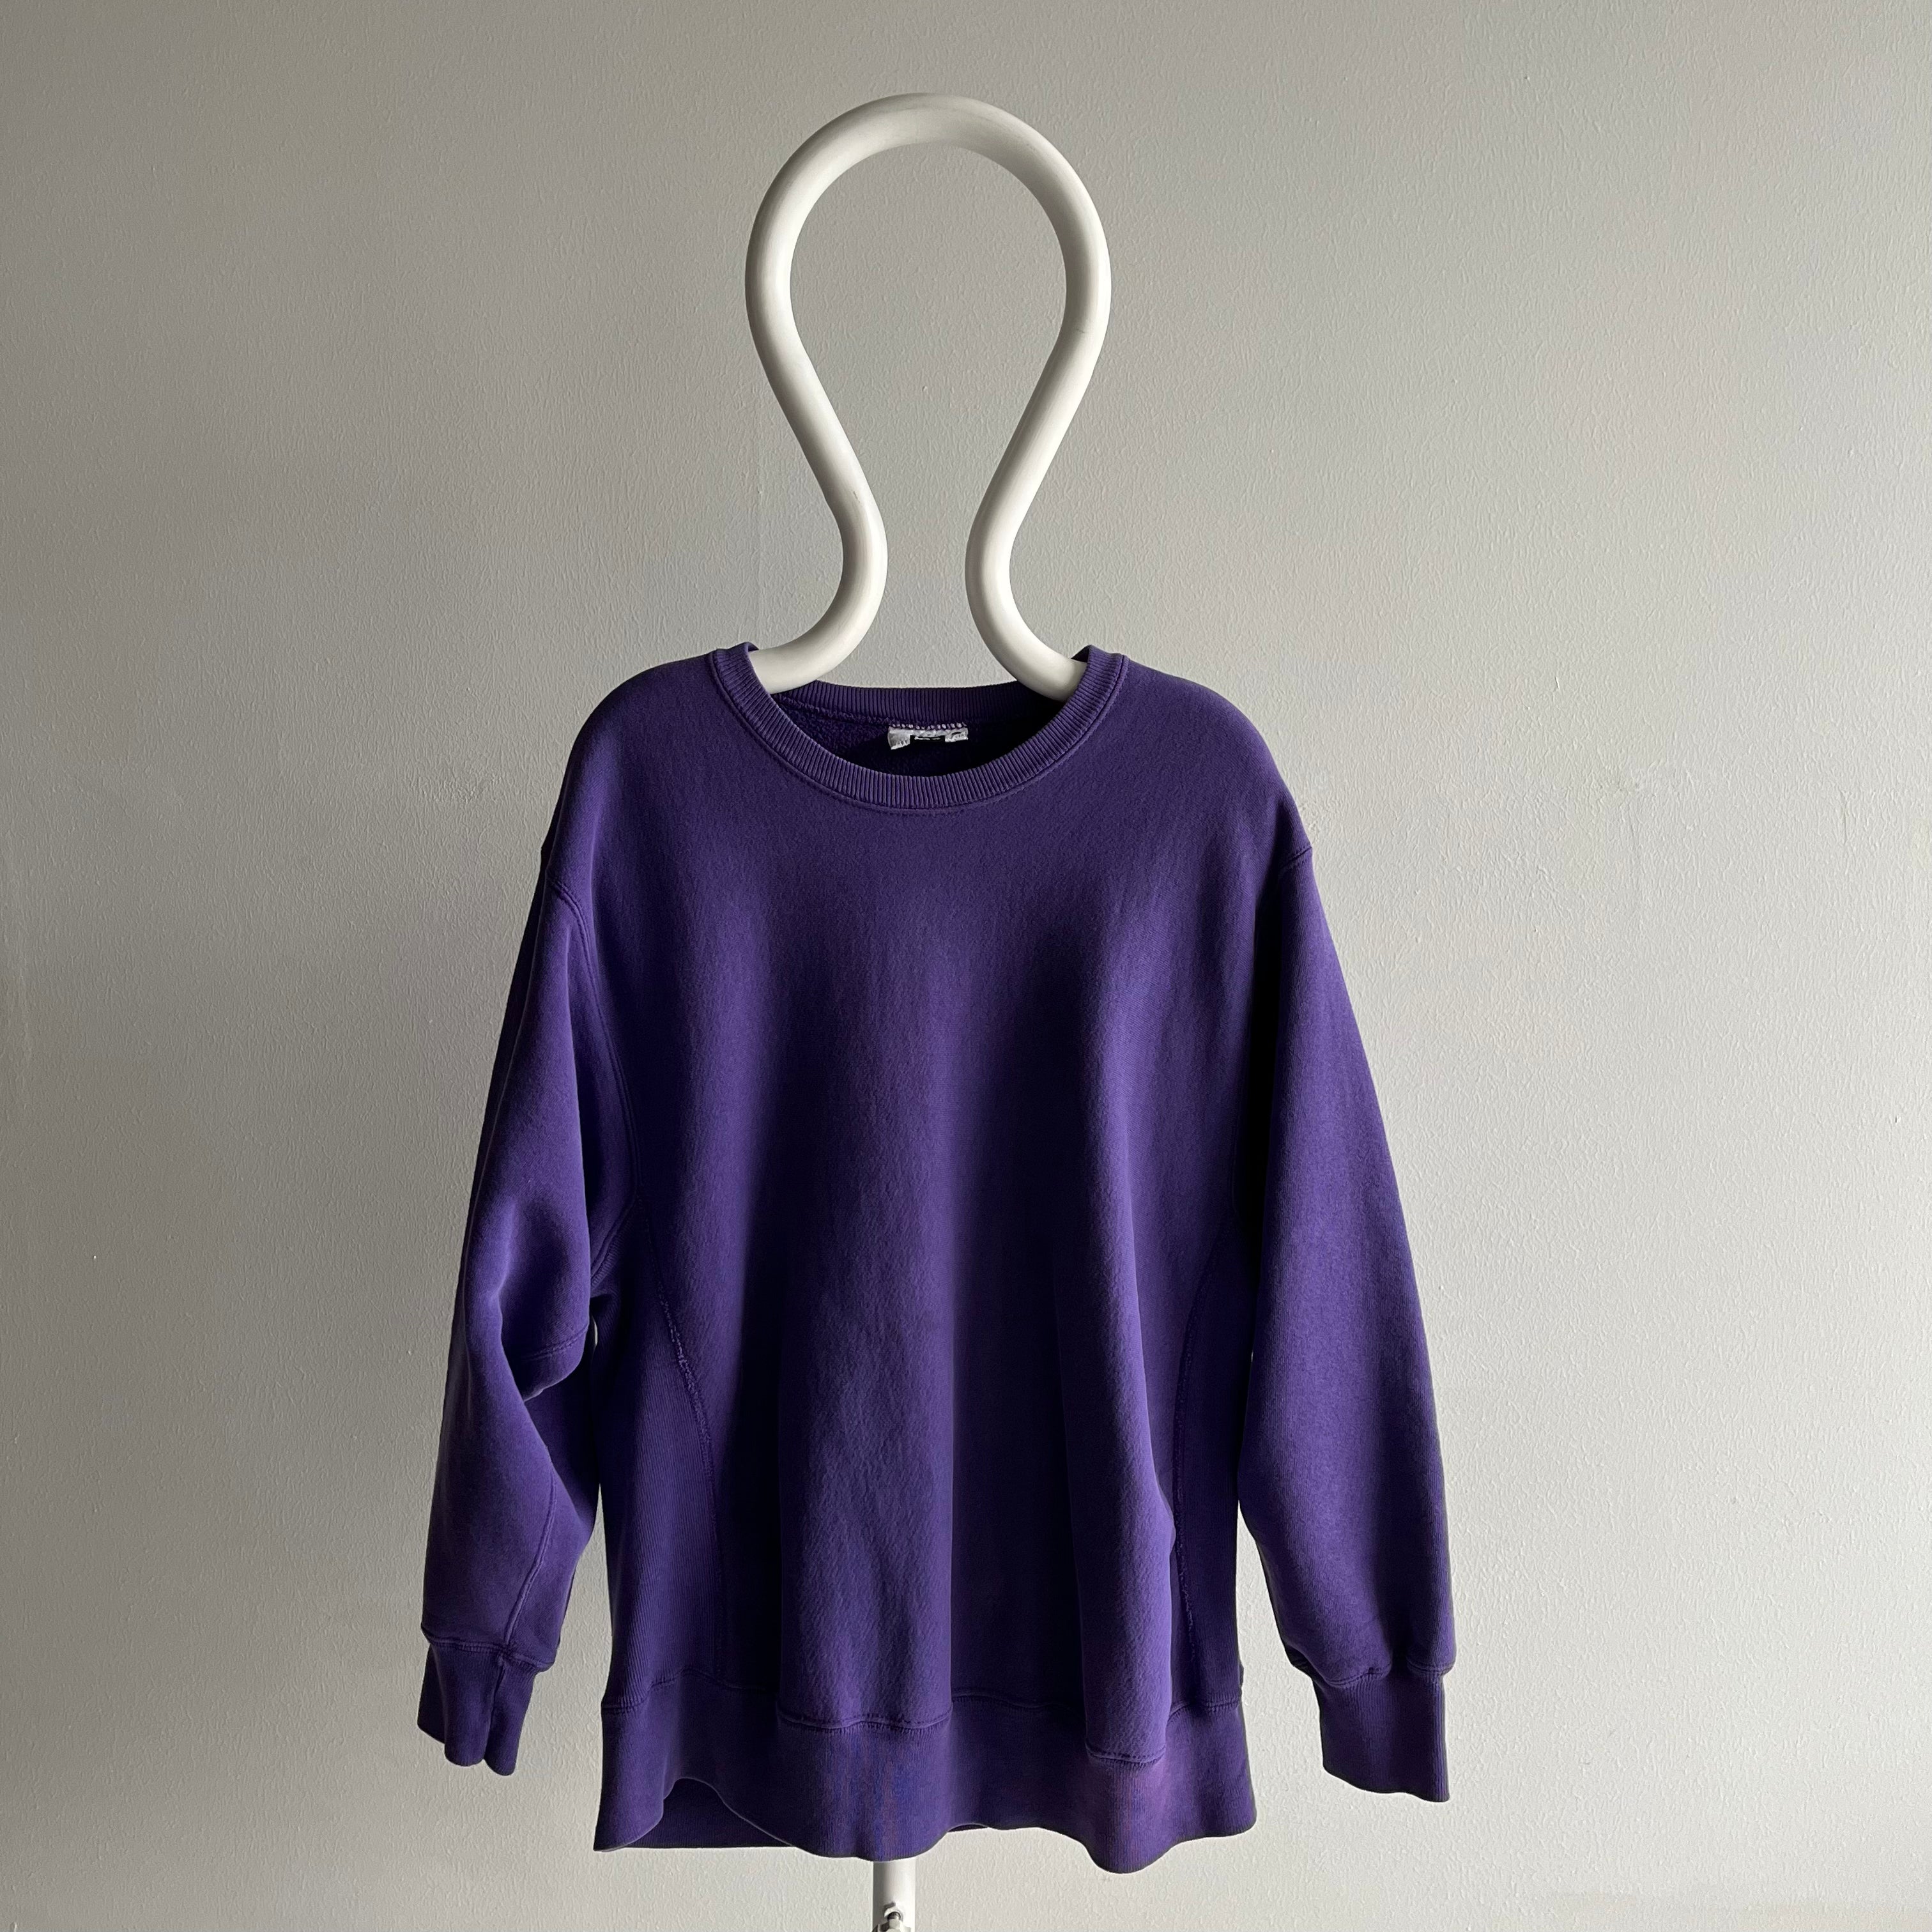 1980/90s Heavyweight Reverse Weave 95% Cotton Purple Sweatshirt by Lee